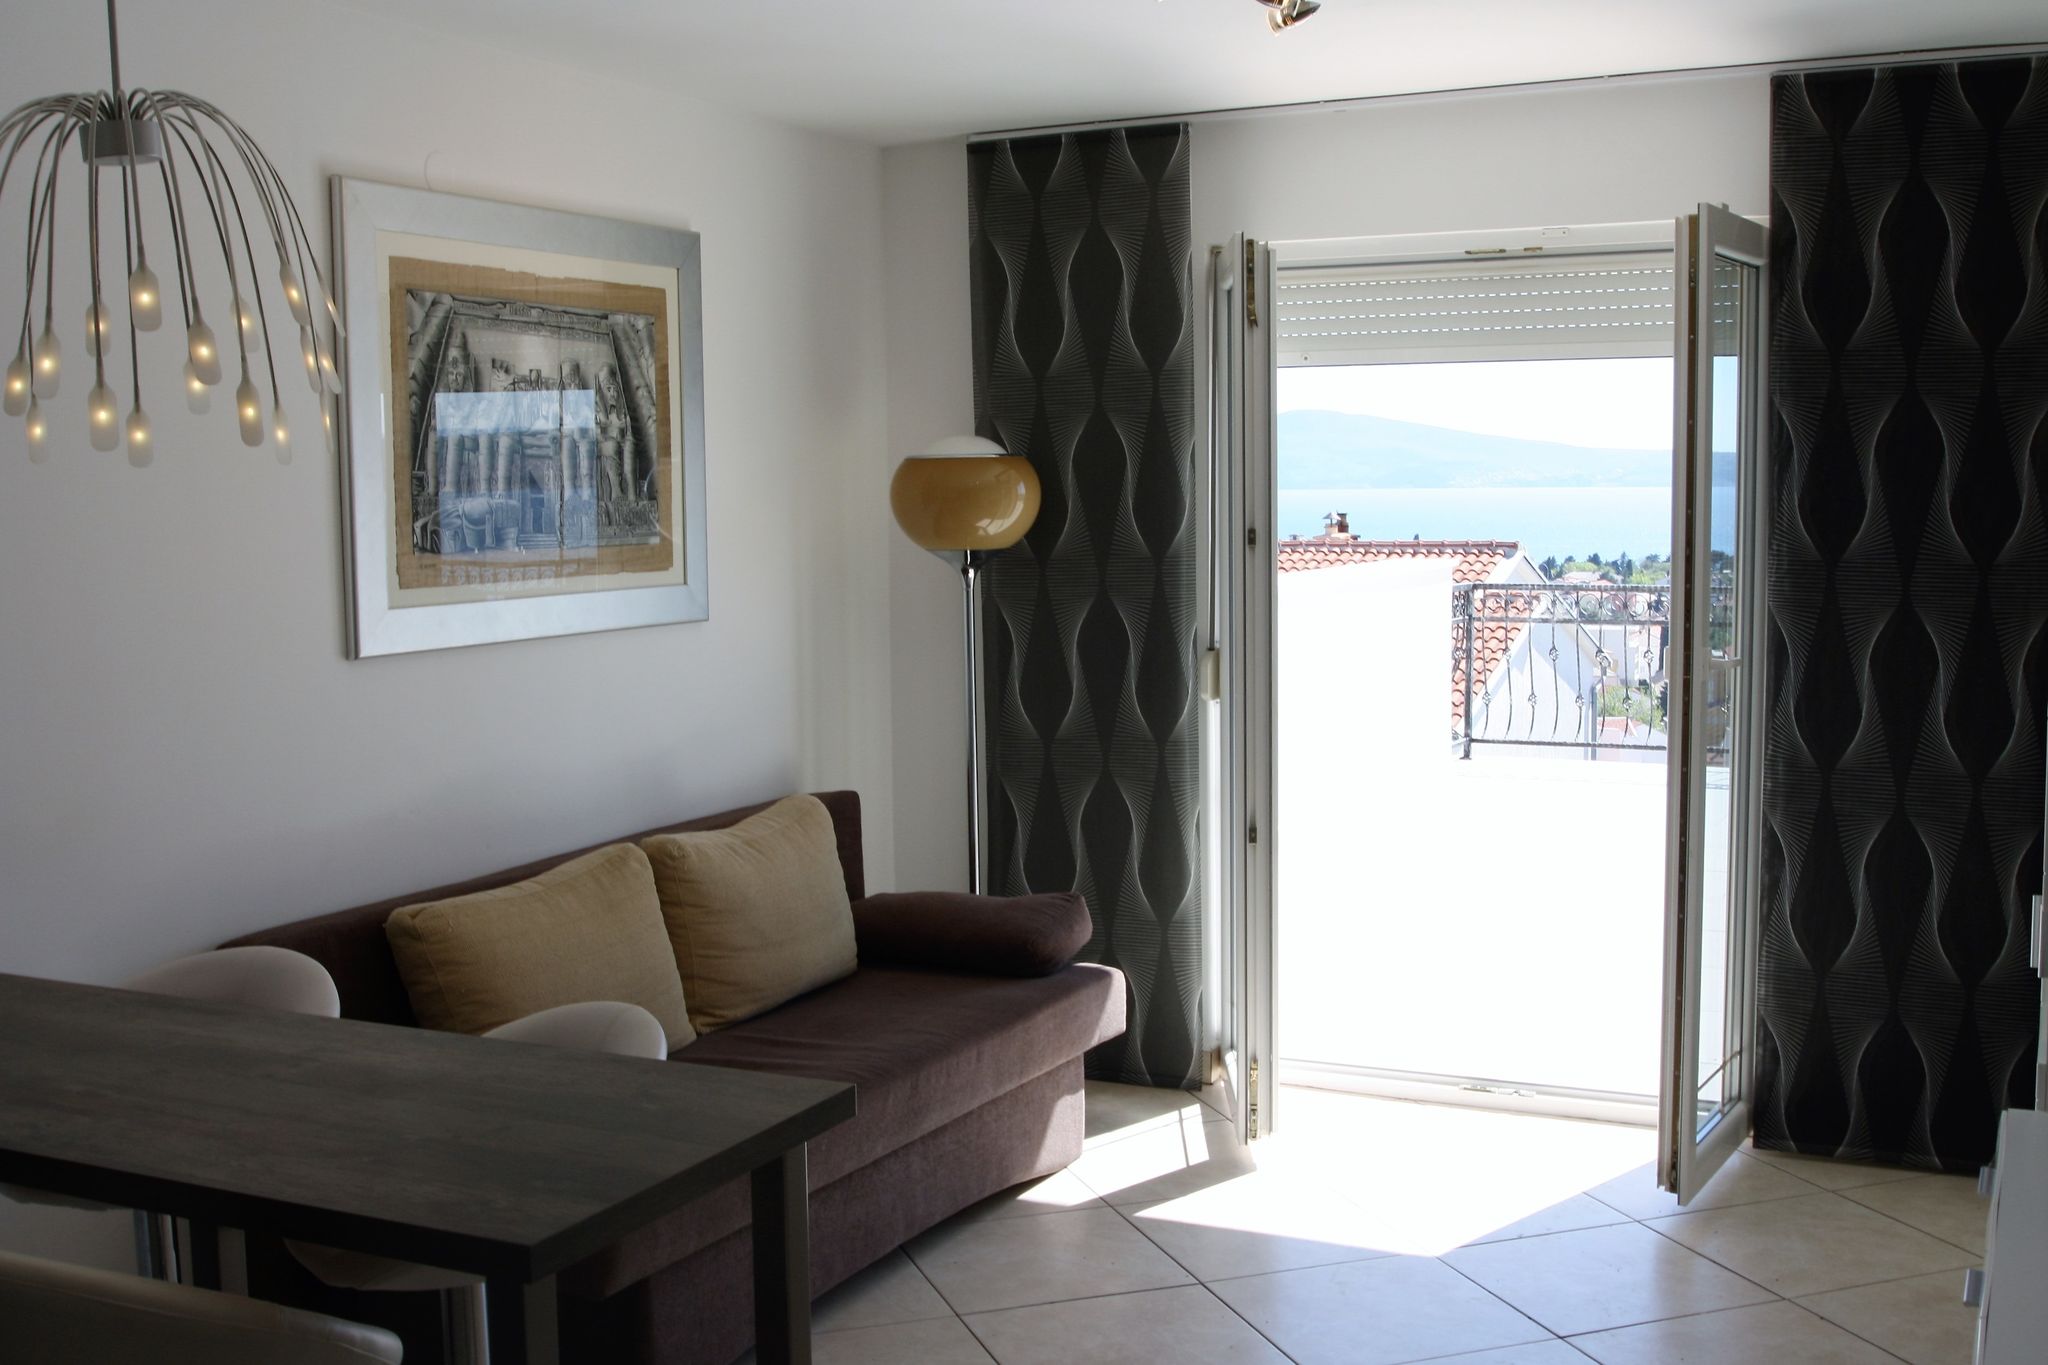 Mooi modern appartement voor maximaal 5 personen met een prachtig uitzicht op zee